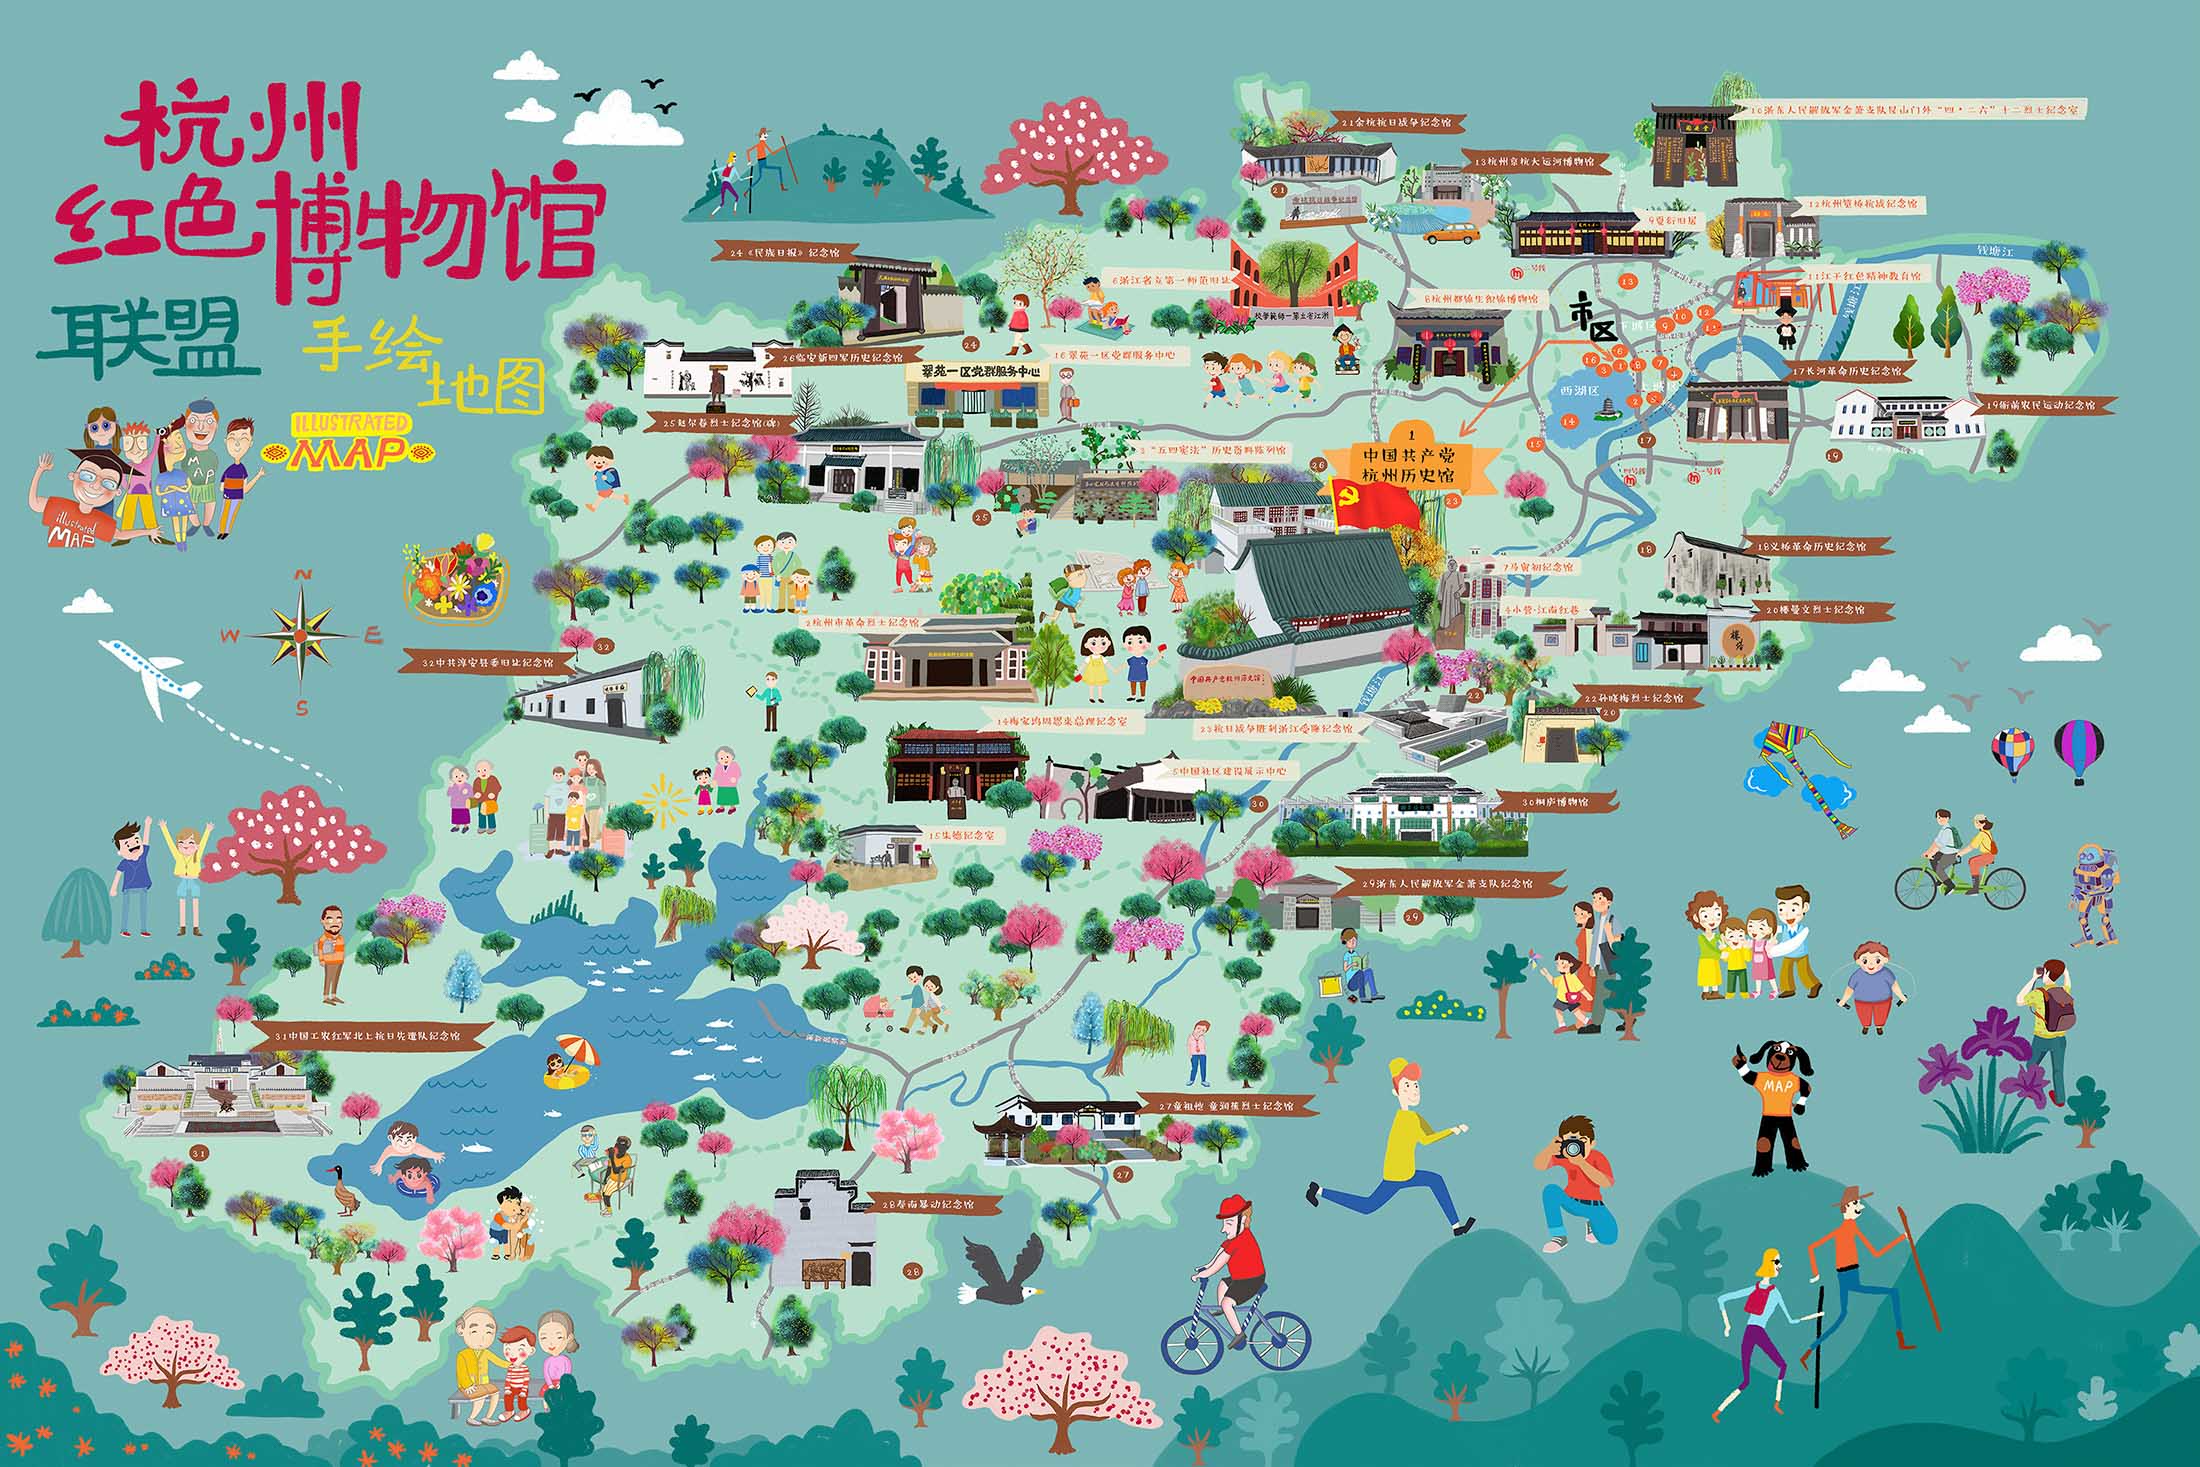 江川手绘地图与科技的完美结合 